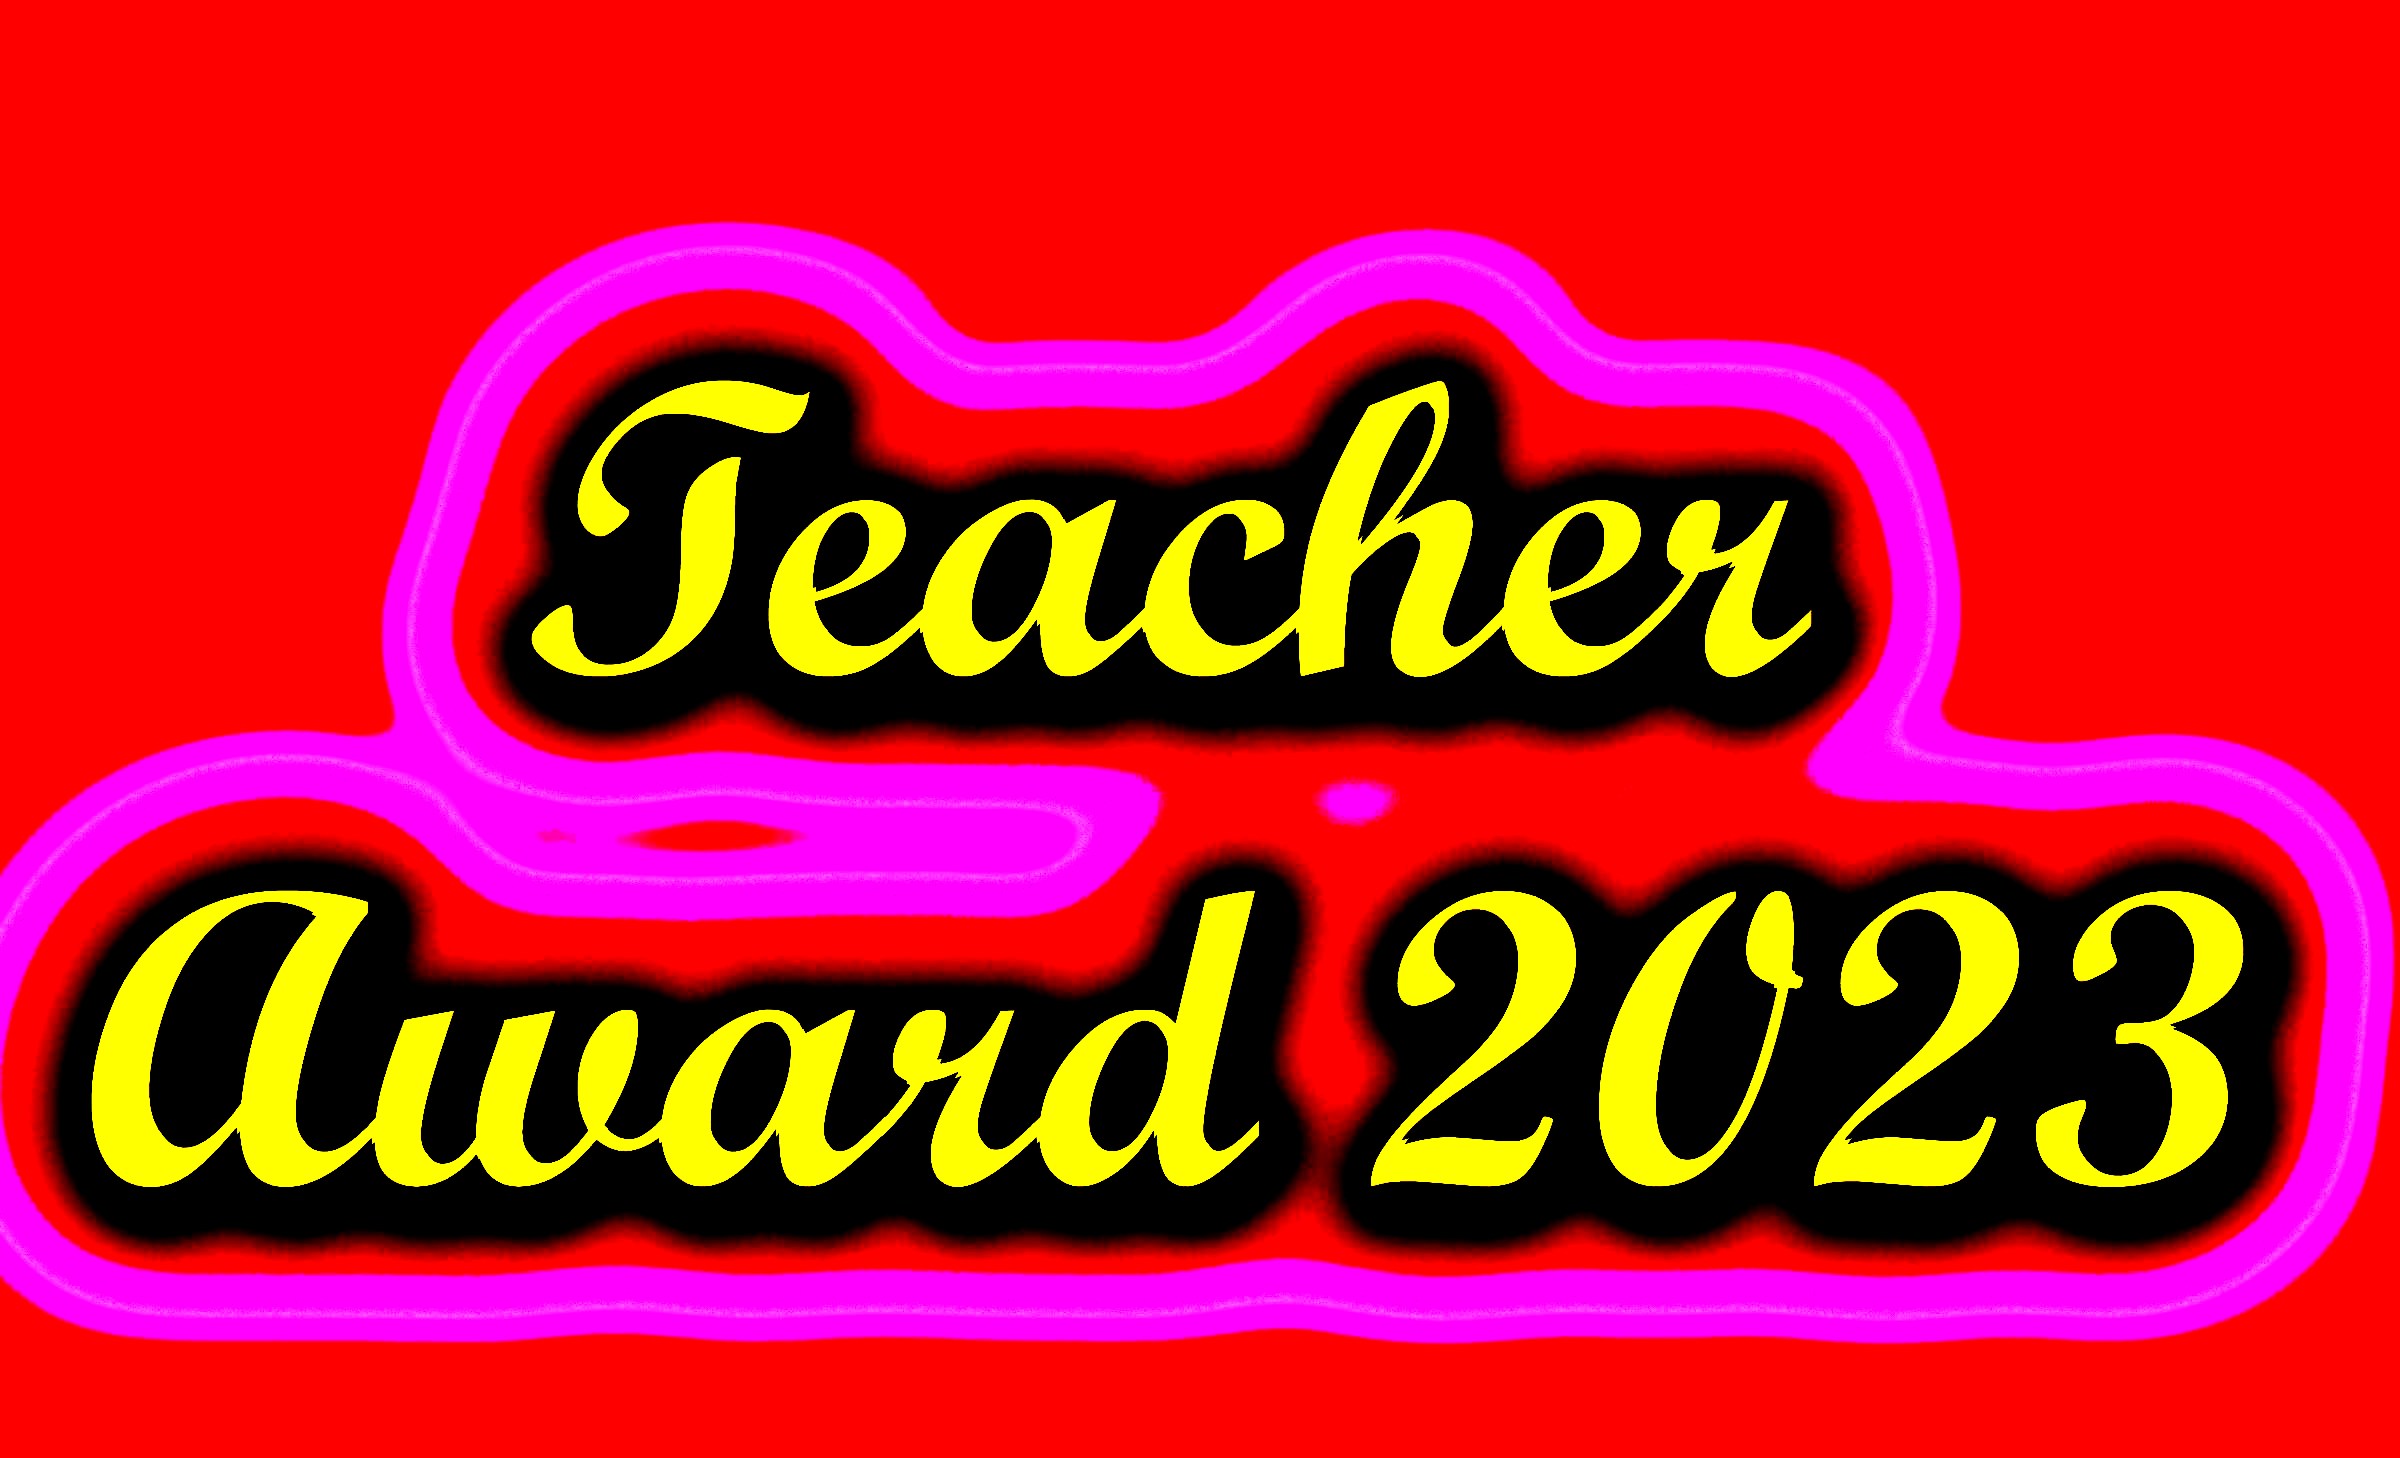 Teacher Award 2023